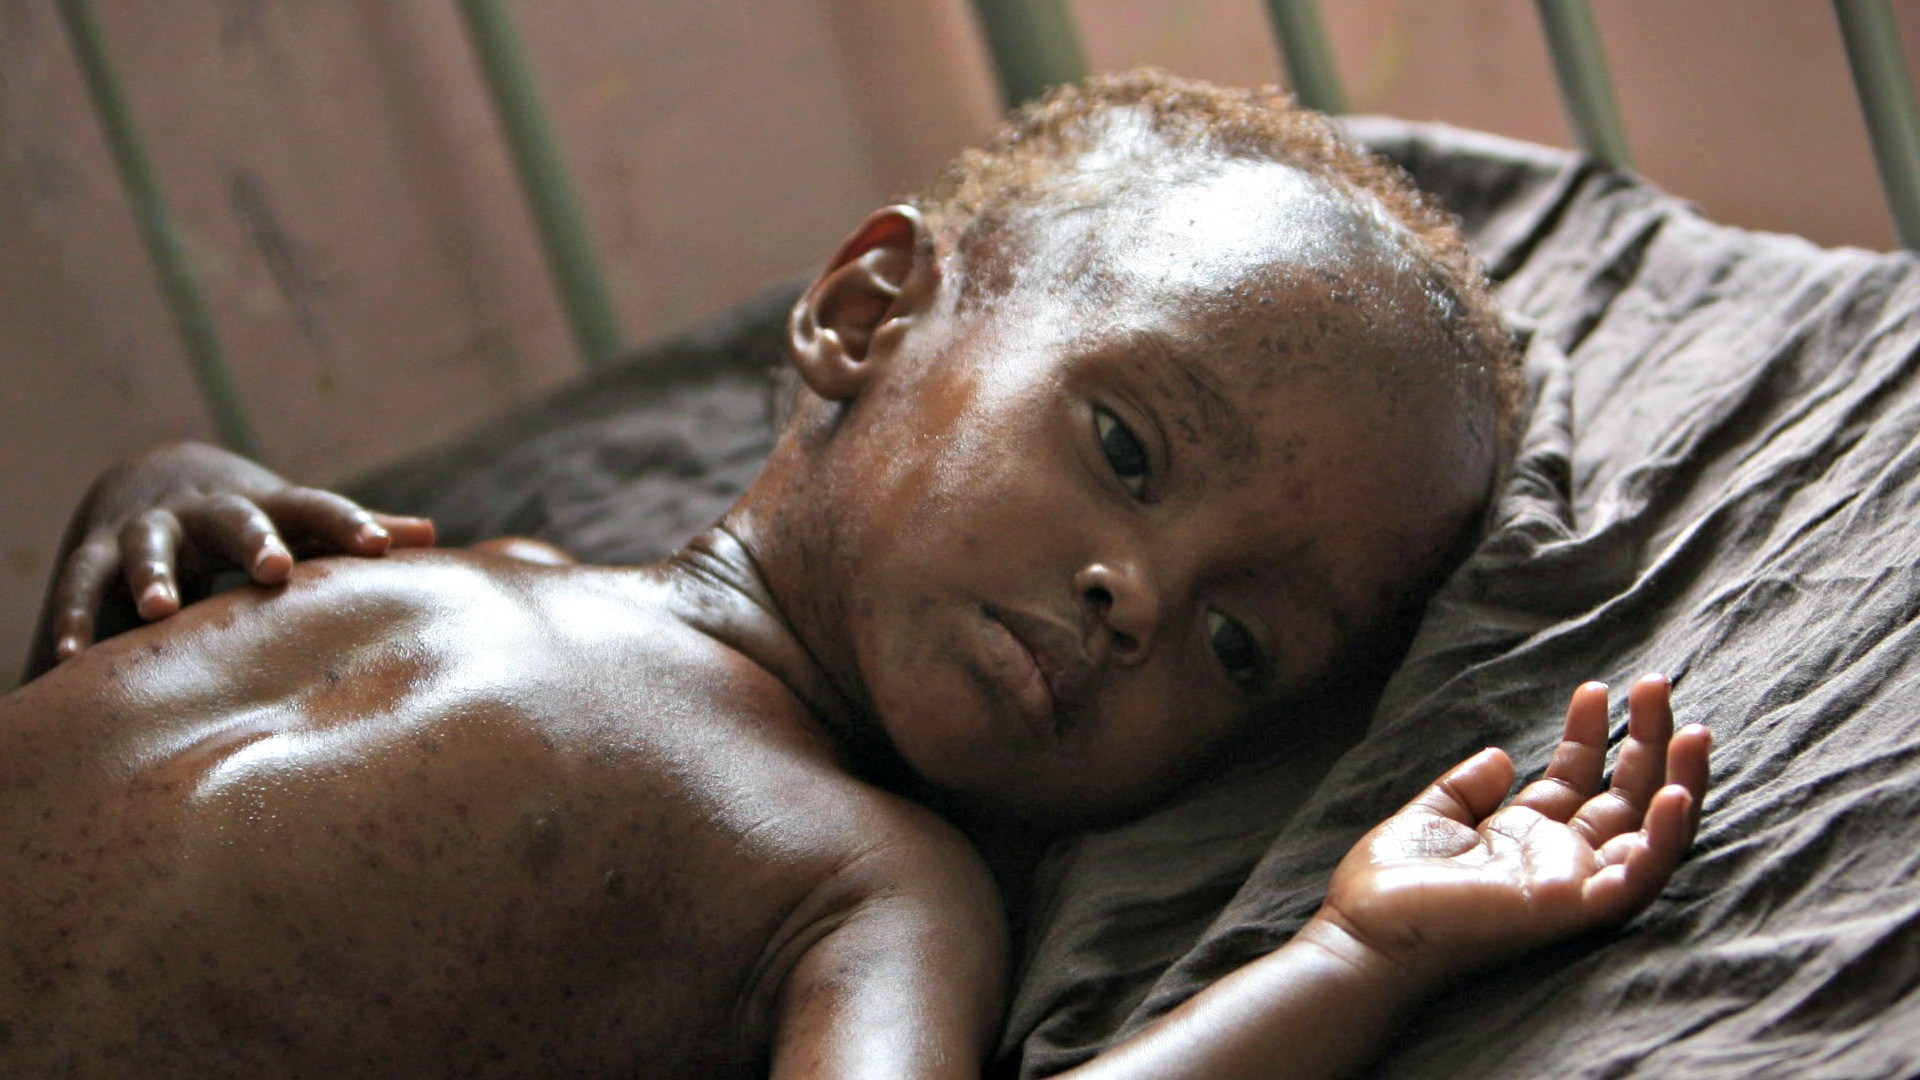 De nombreux enfants du Sud souffrent de la faim (Photo:UN Photos/Flickr/CC BY-NC-ND 2.0)